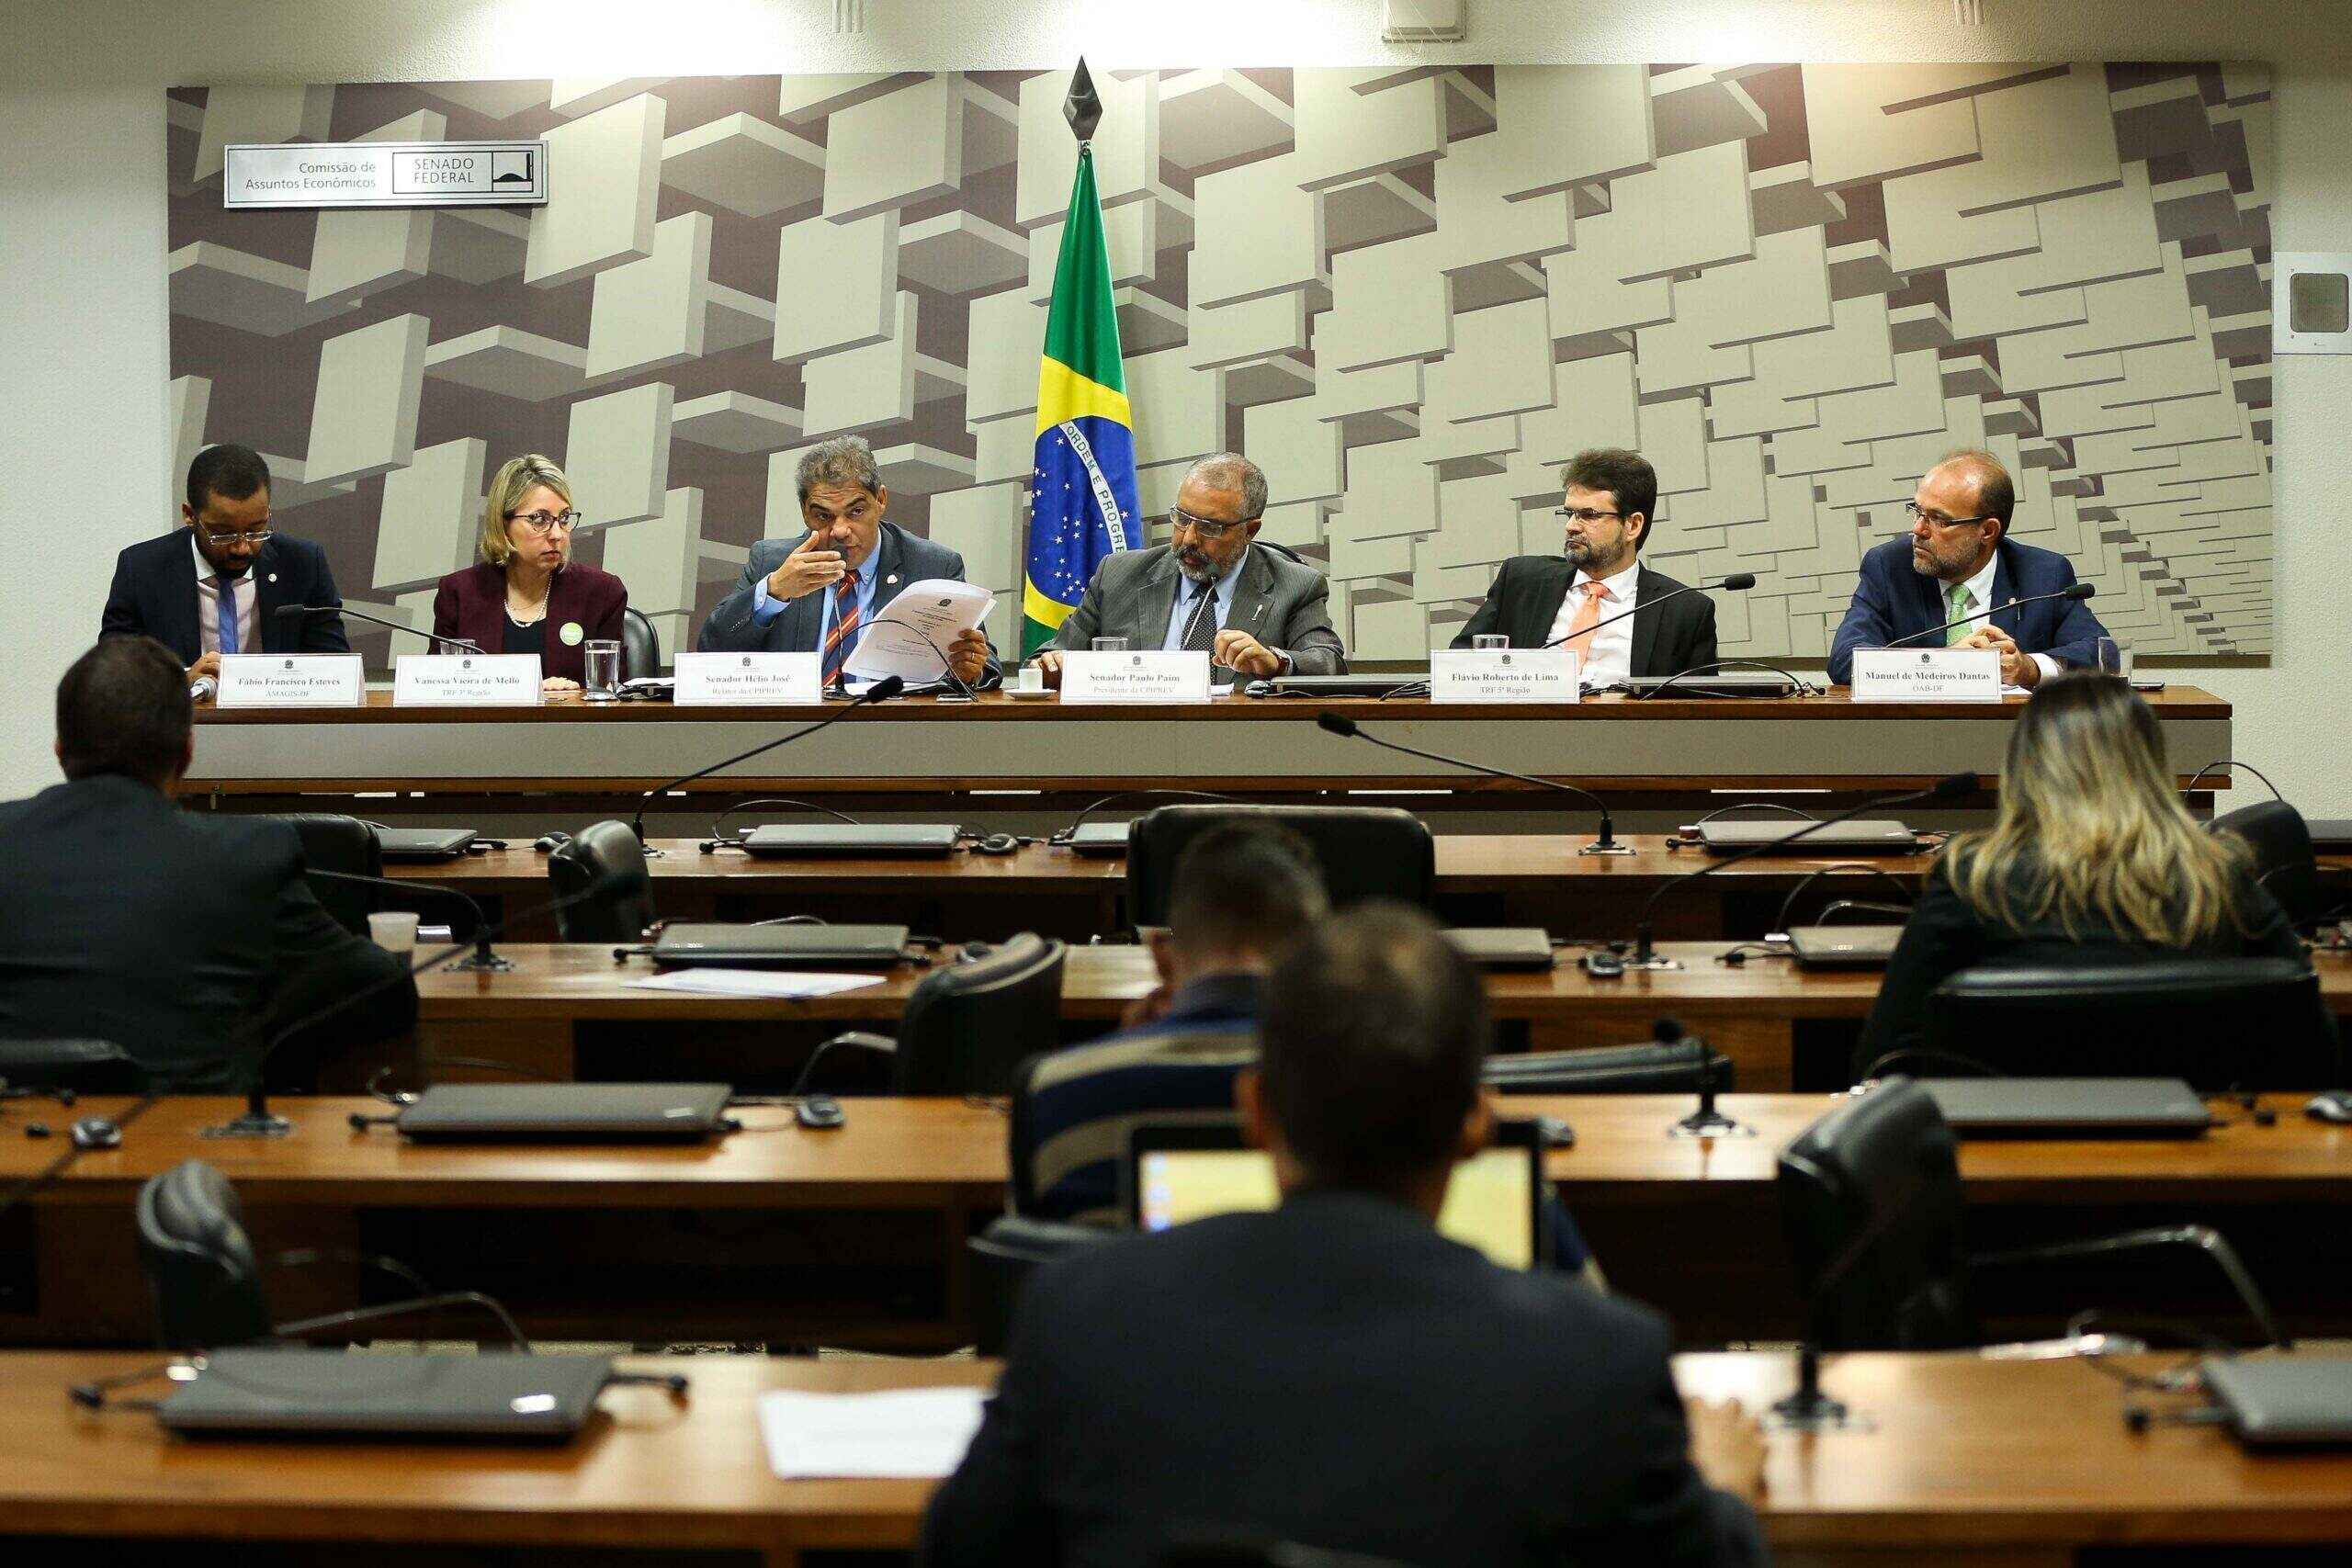 Na imagem, ministros conversando durante reunião da comissão parlamentar. Conteúdo sobre comissões parlamentares